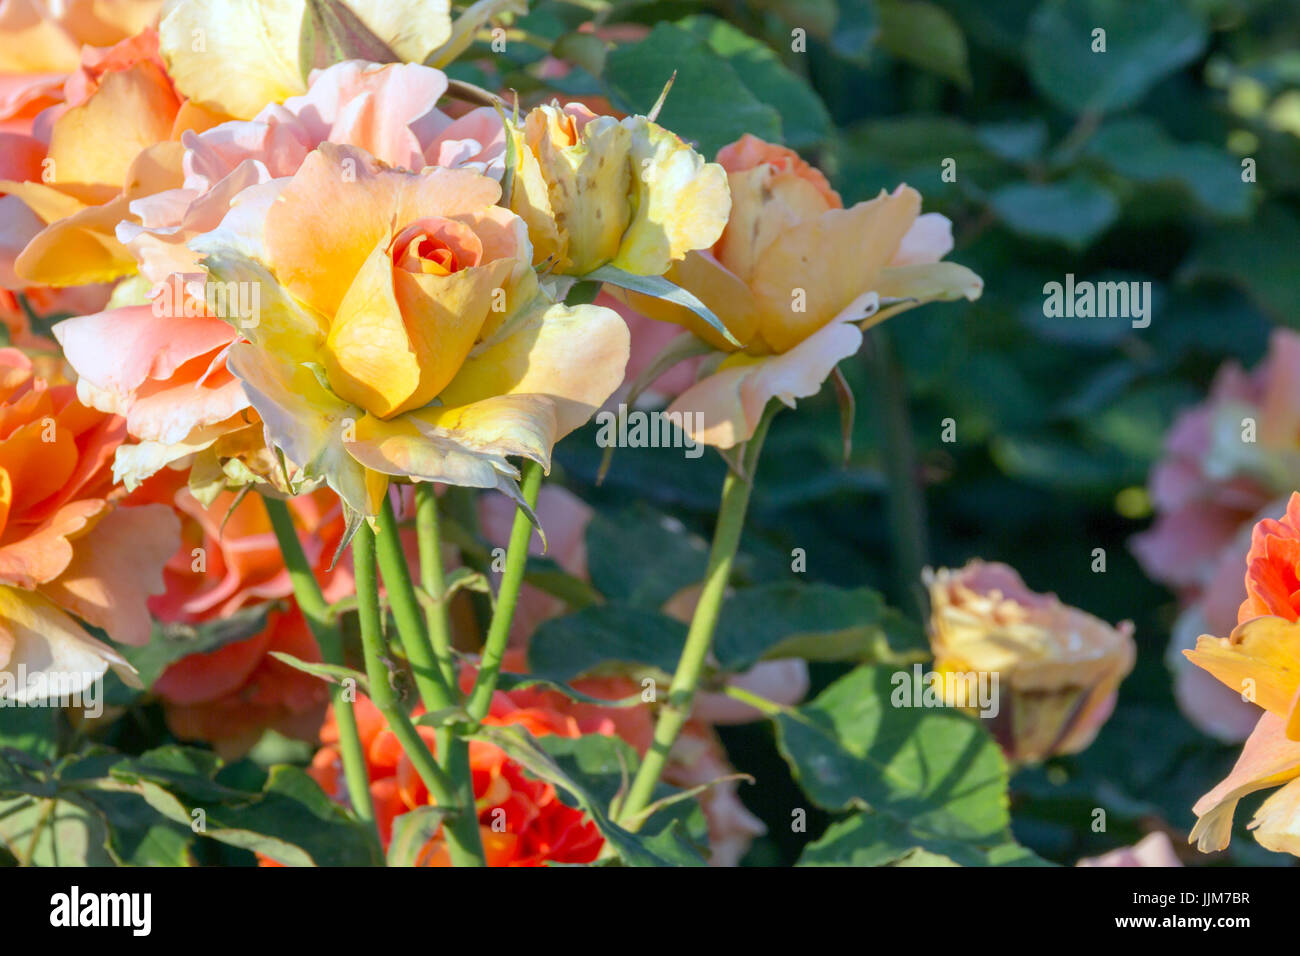 Flores del Parque de Las Rosas de Los Angeles Kalifornien, Captadas Bajo el Fuerte Calor de Una Tarde de Verano, Sus Delicados Petalos lichtbestän al sol Stockfoto